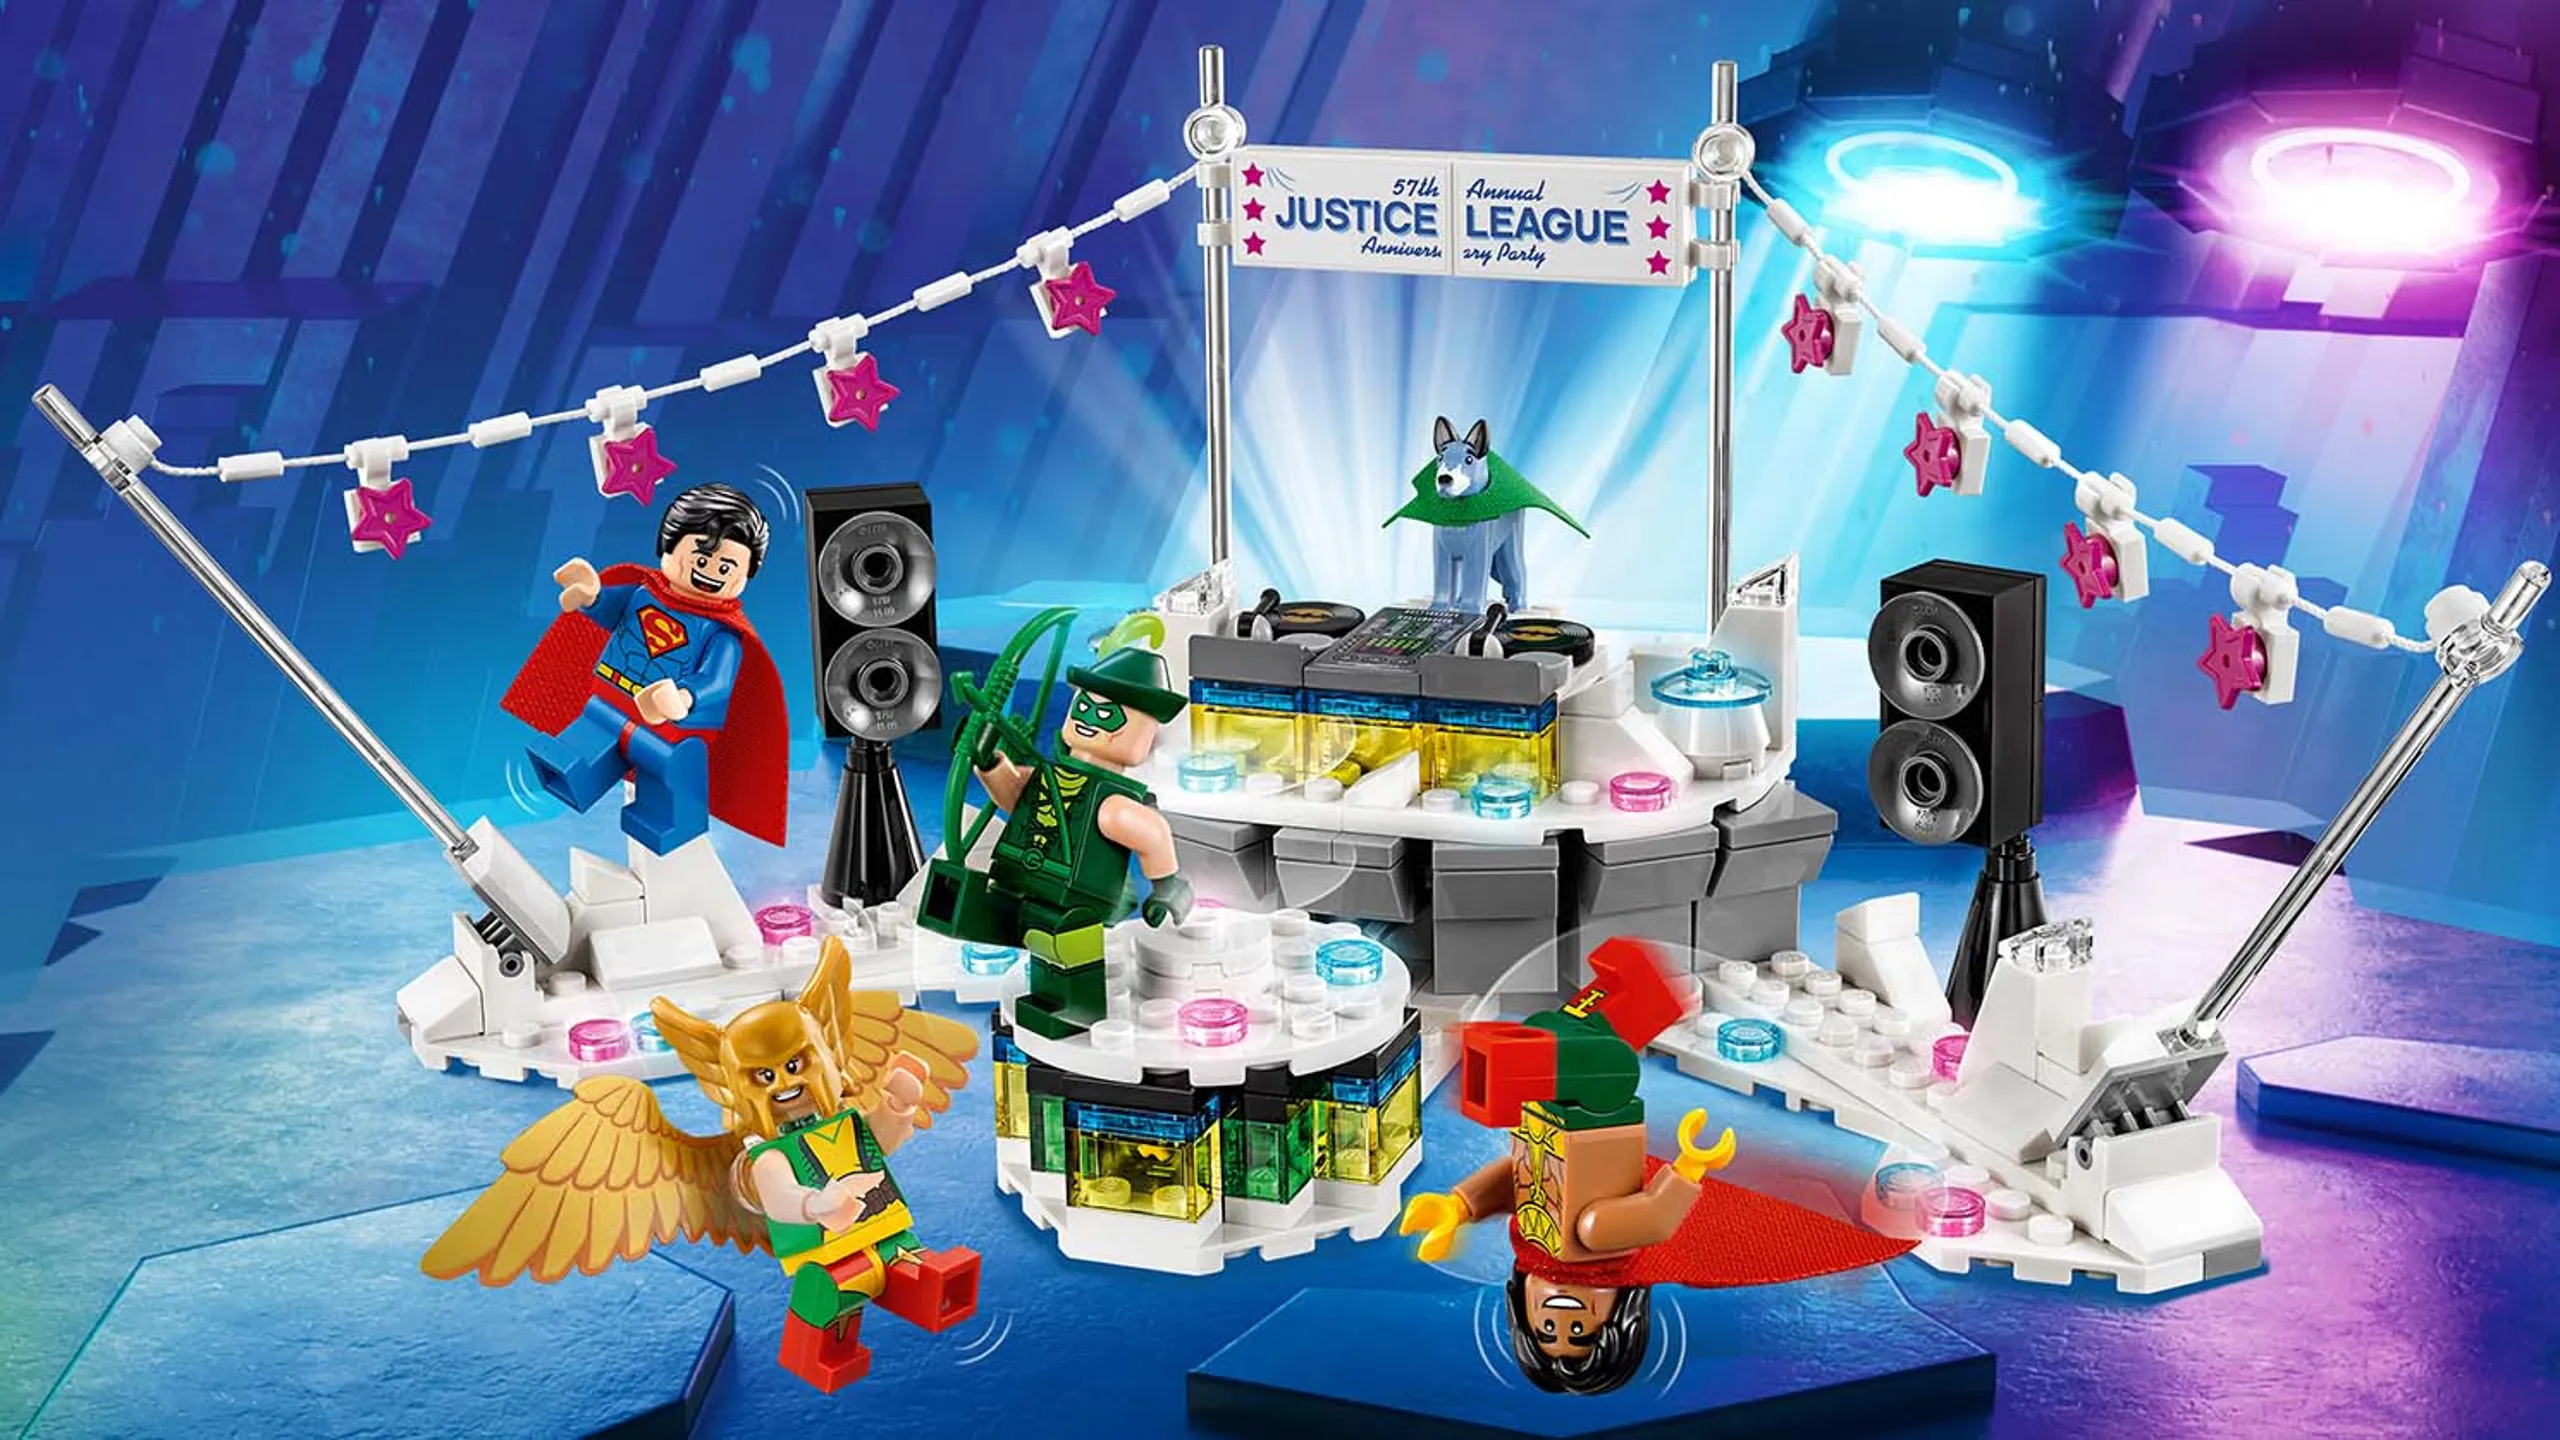 LEGO Batman Movie The Justice League Anniversary Party - 70919 - Superman Green Arrow Hawkgirl El Dorado Wonder Dog are all having one big Justice League anniversary party